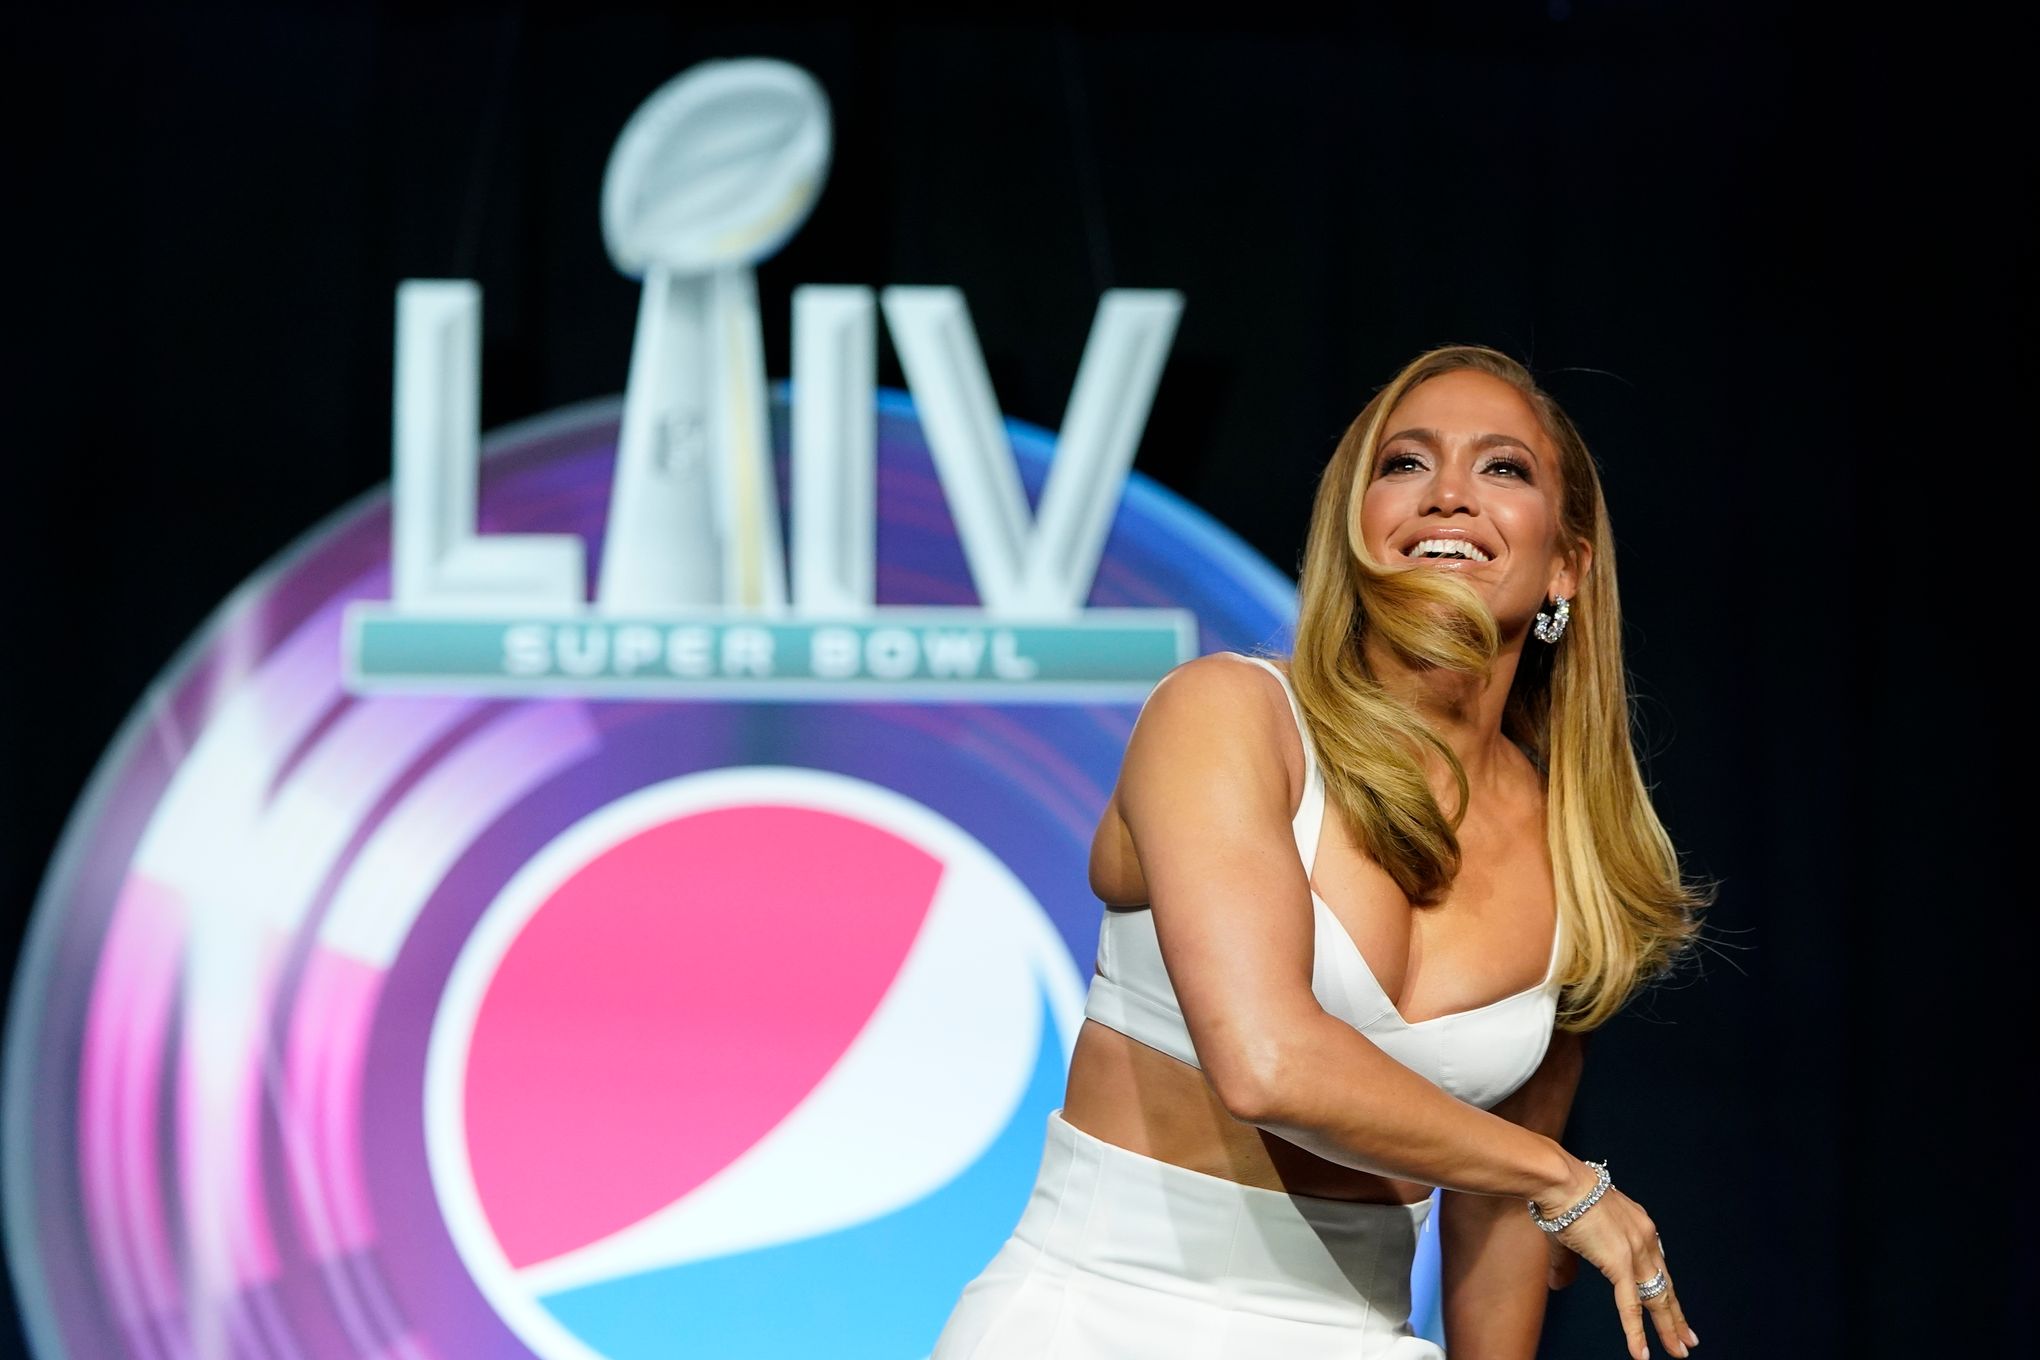 Super Bowl halftime setlist: Shakira, Jennifer Lopez song list